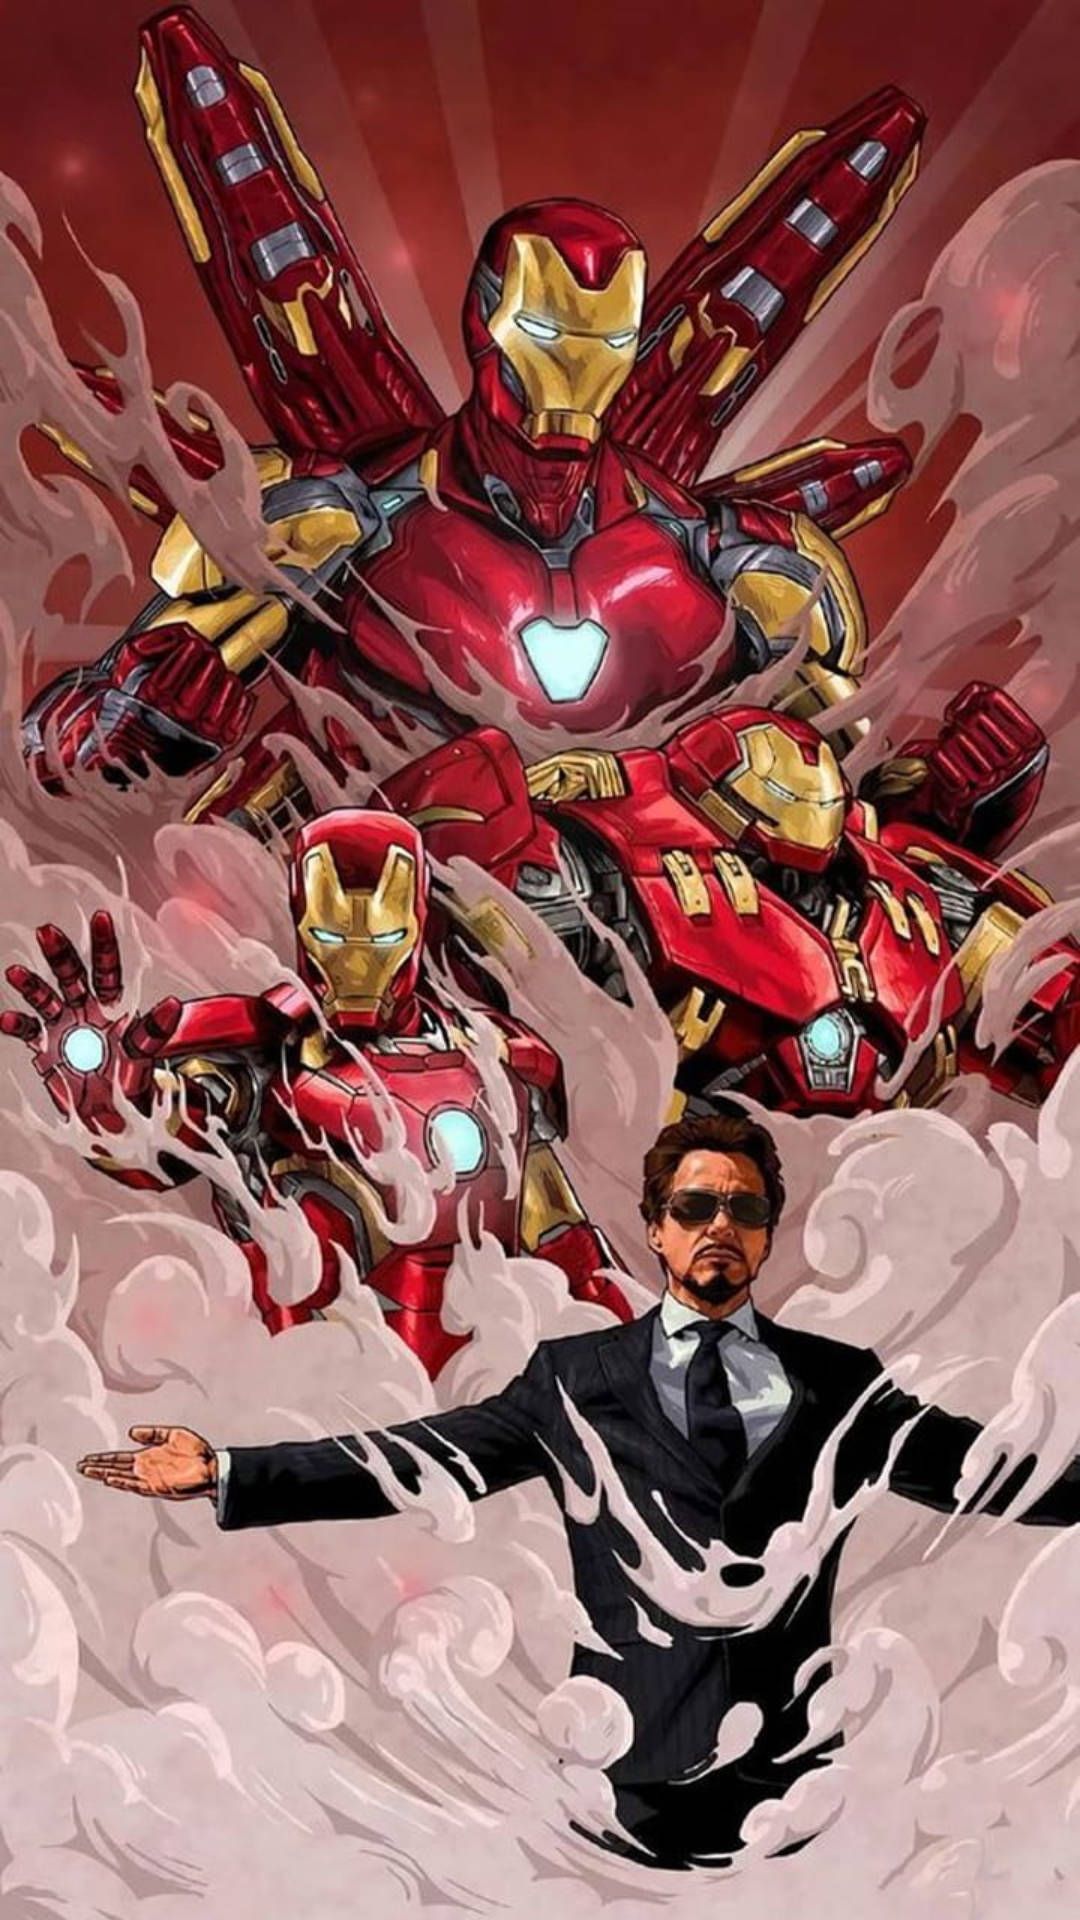  Iron Man Hintergrundbild 1080x1920. Free Iron Man Android Wallpaper Downloads, Iron Man Android Wallpaper for FREE